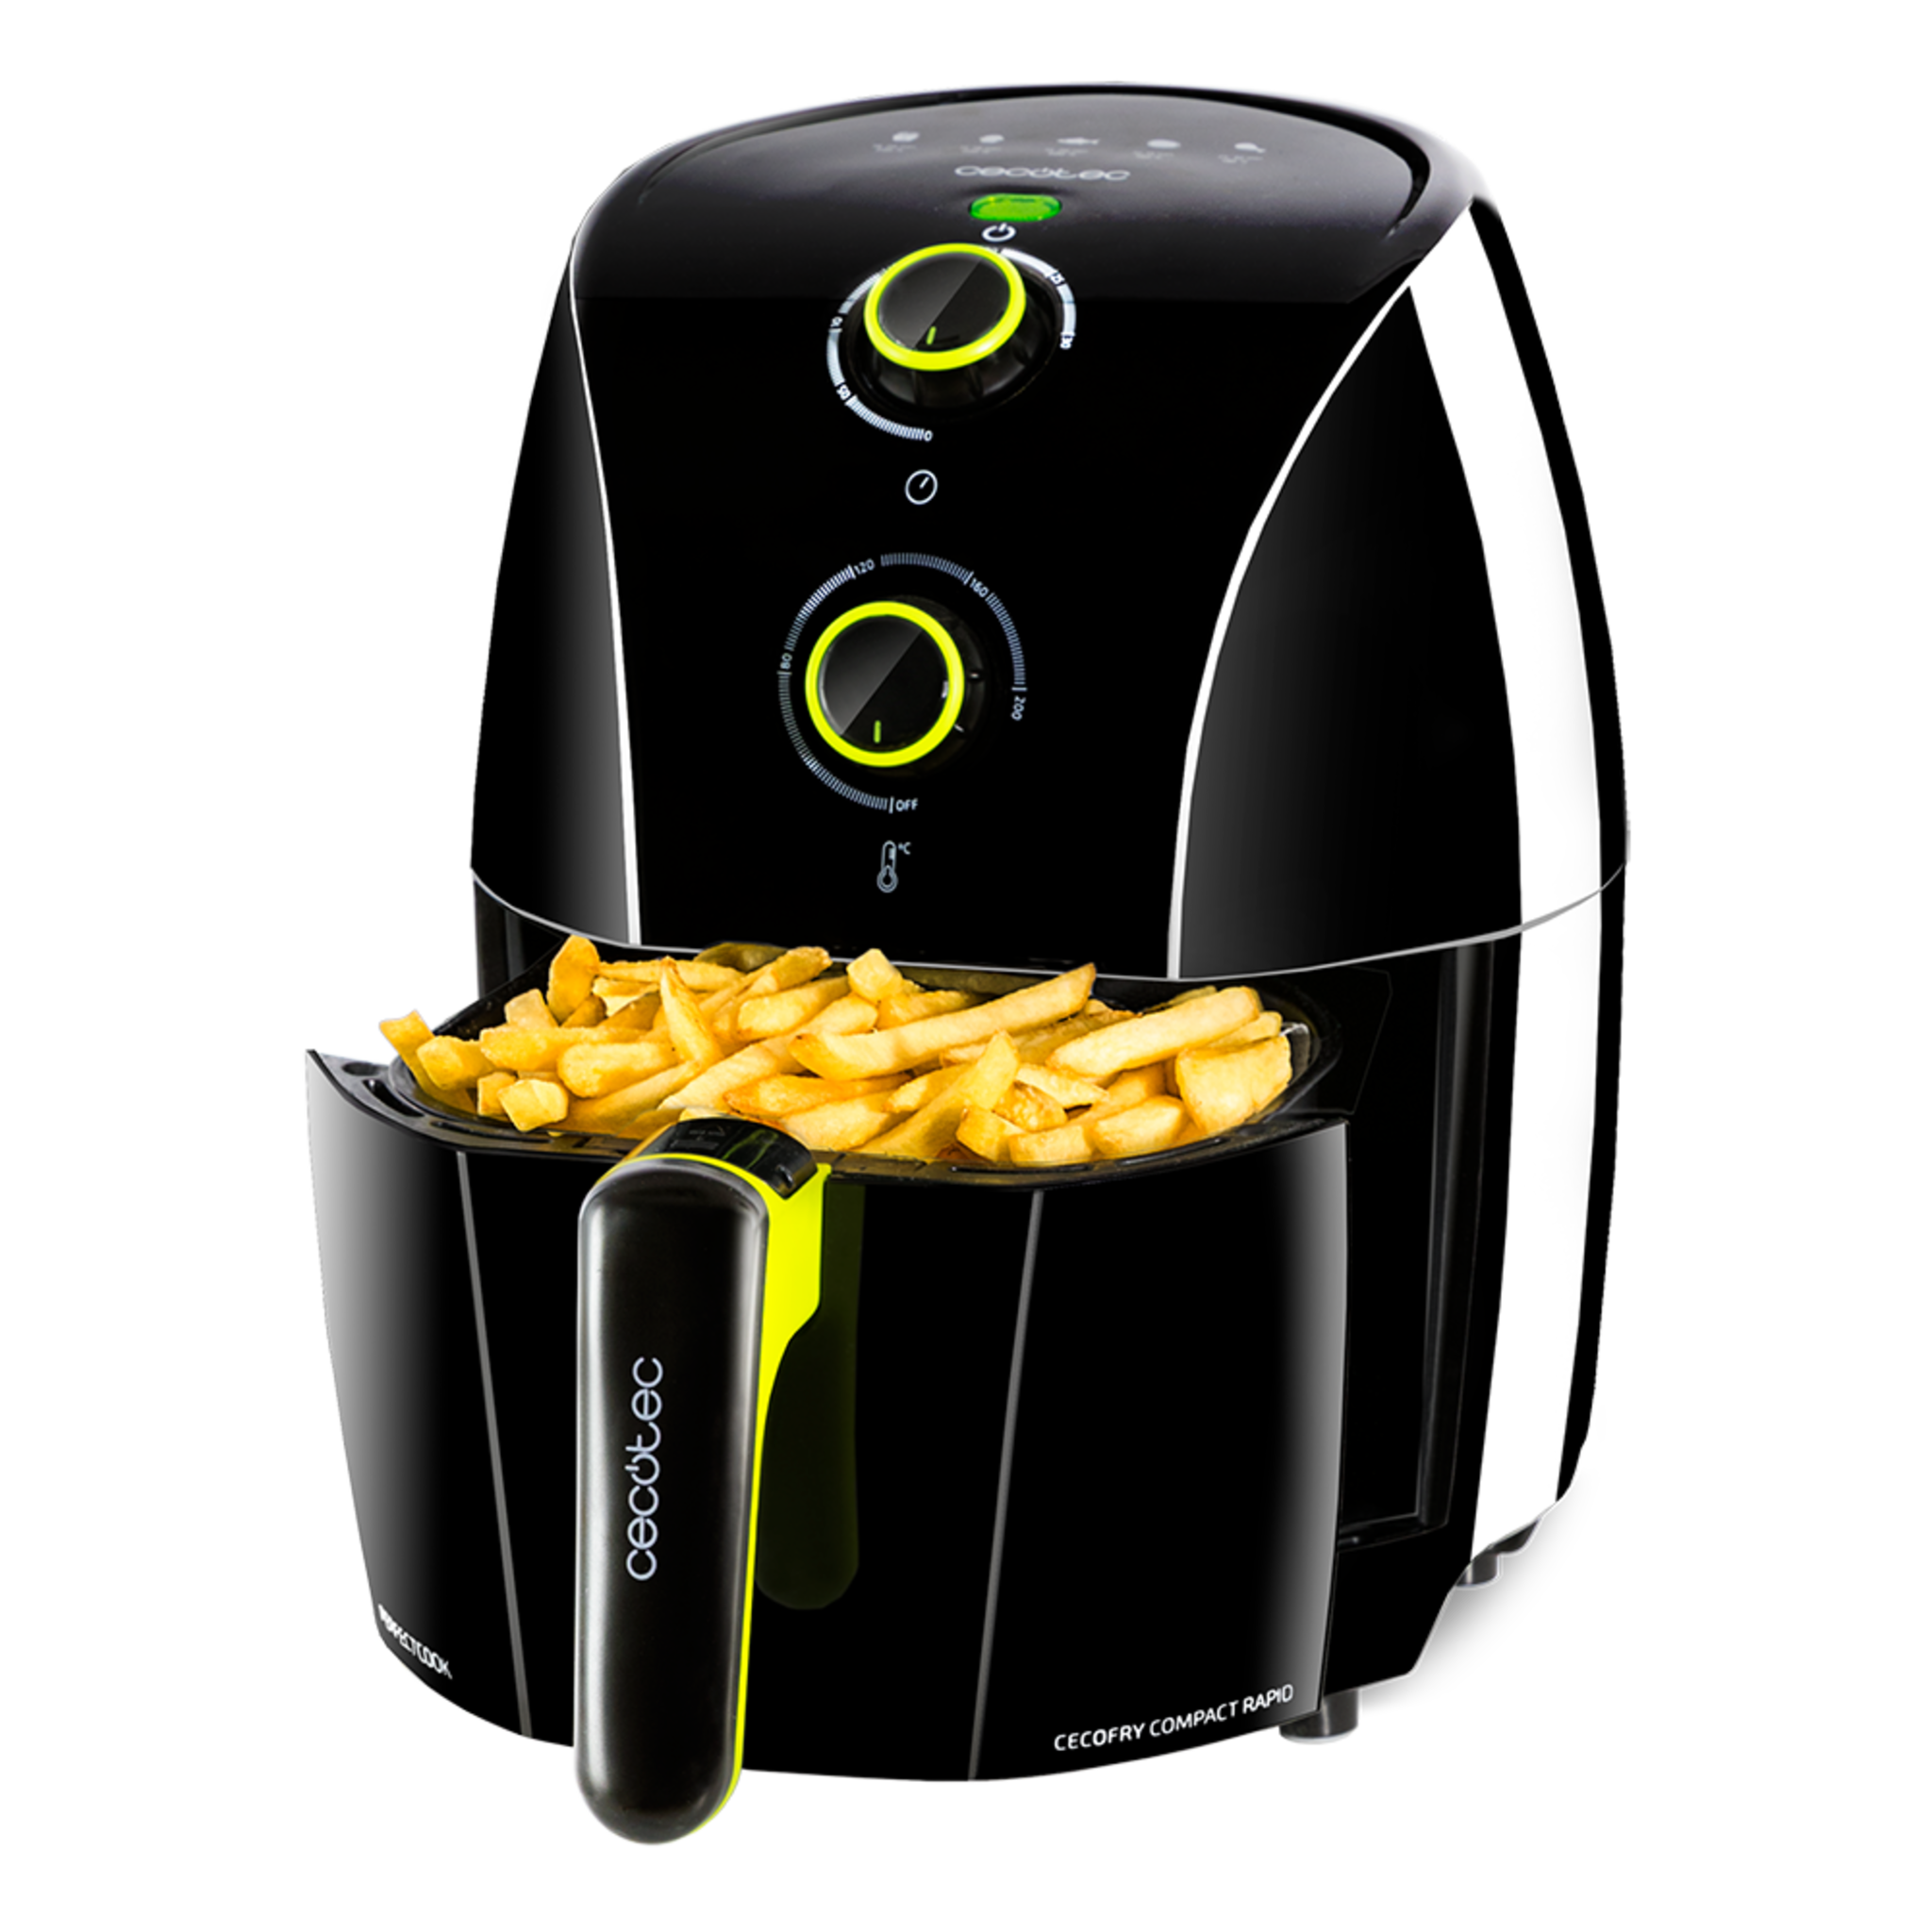 Friteuse diététique sans huile compacte Cecofry Compact Rapid Black. Capacité pour 400 gr de pommes de terre, température 200 ºC, temps réglable 0-30 min, livre de recettes inclus.